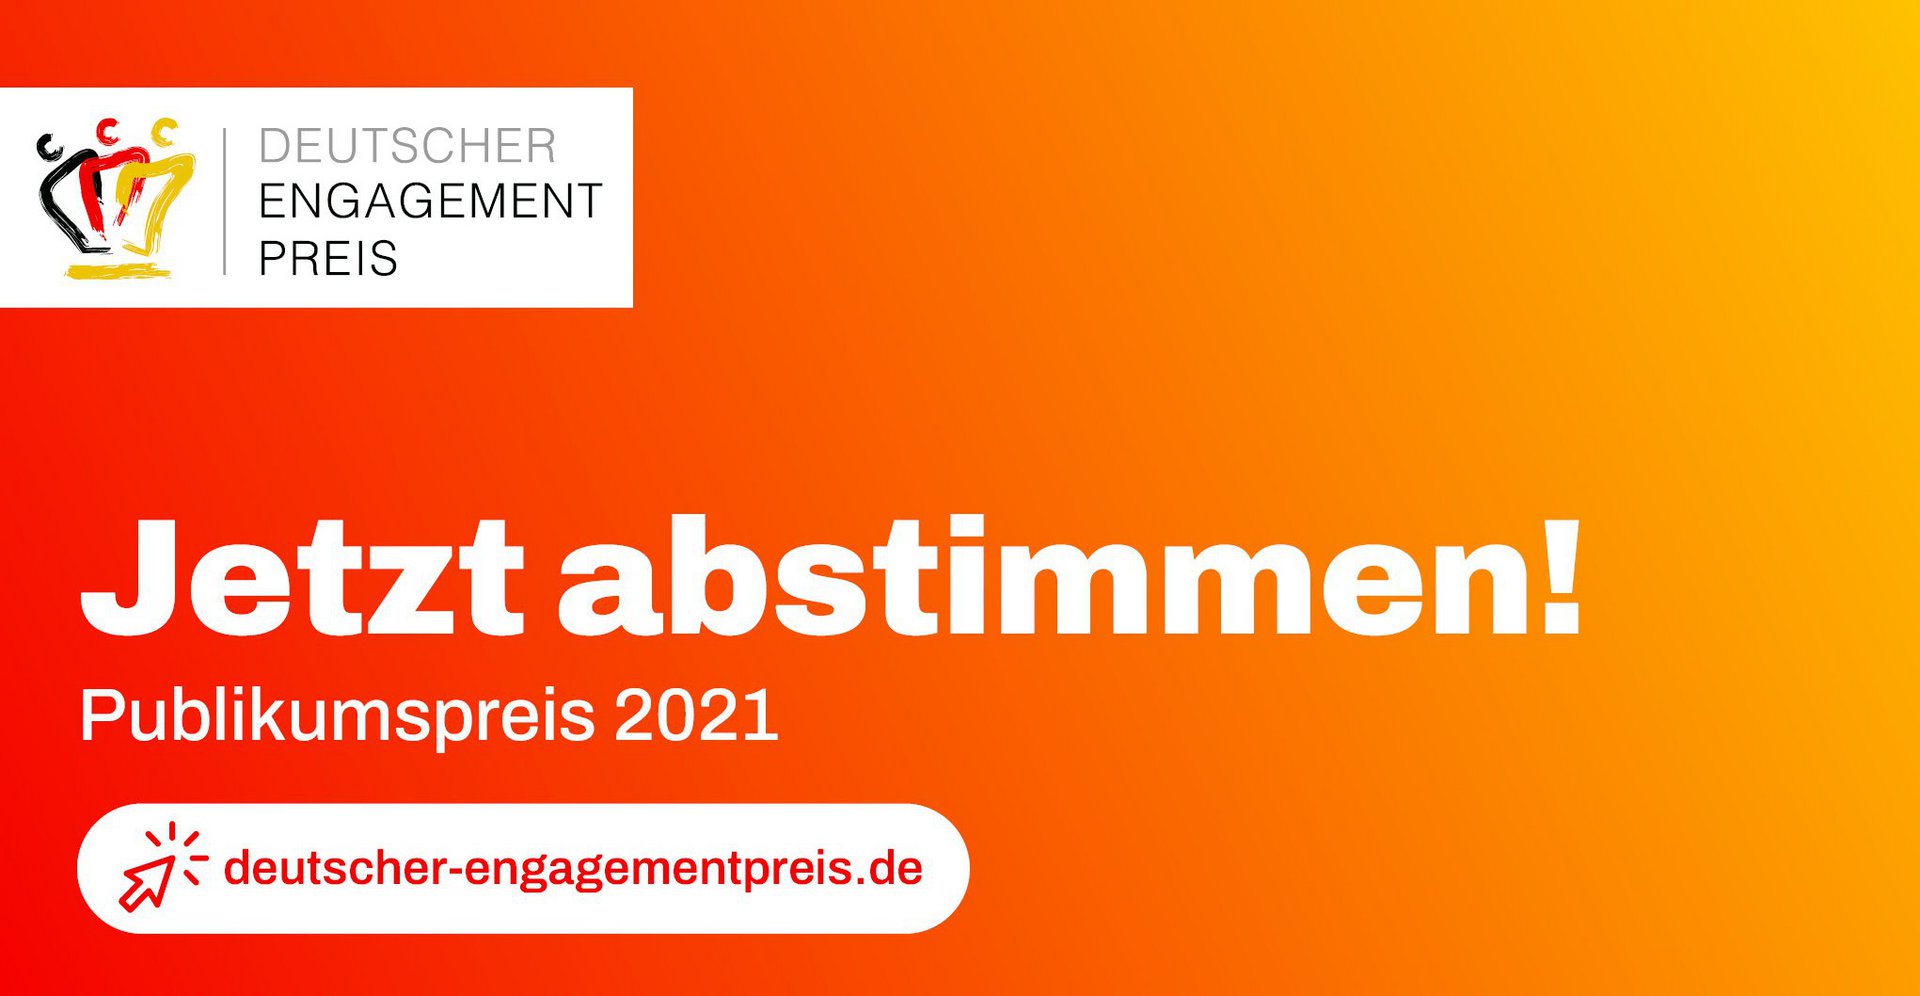 Deutscher Engagement Preis: Abstimmen für a tip:tap